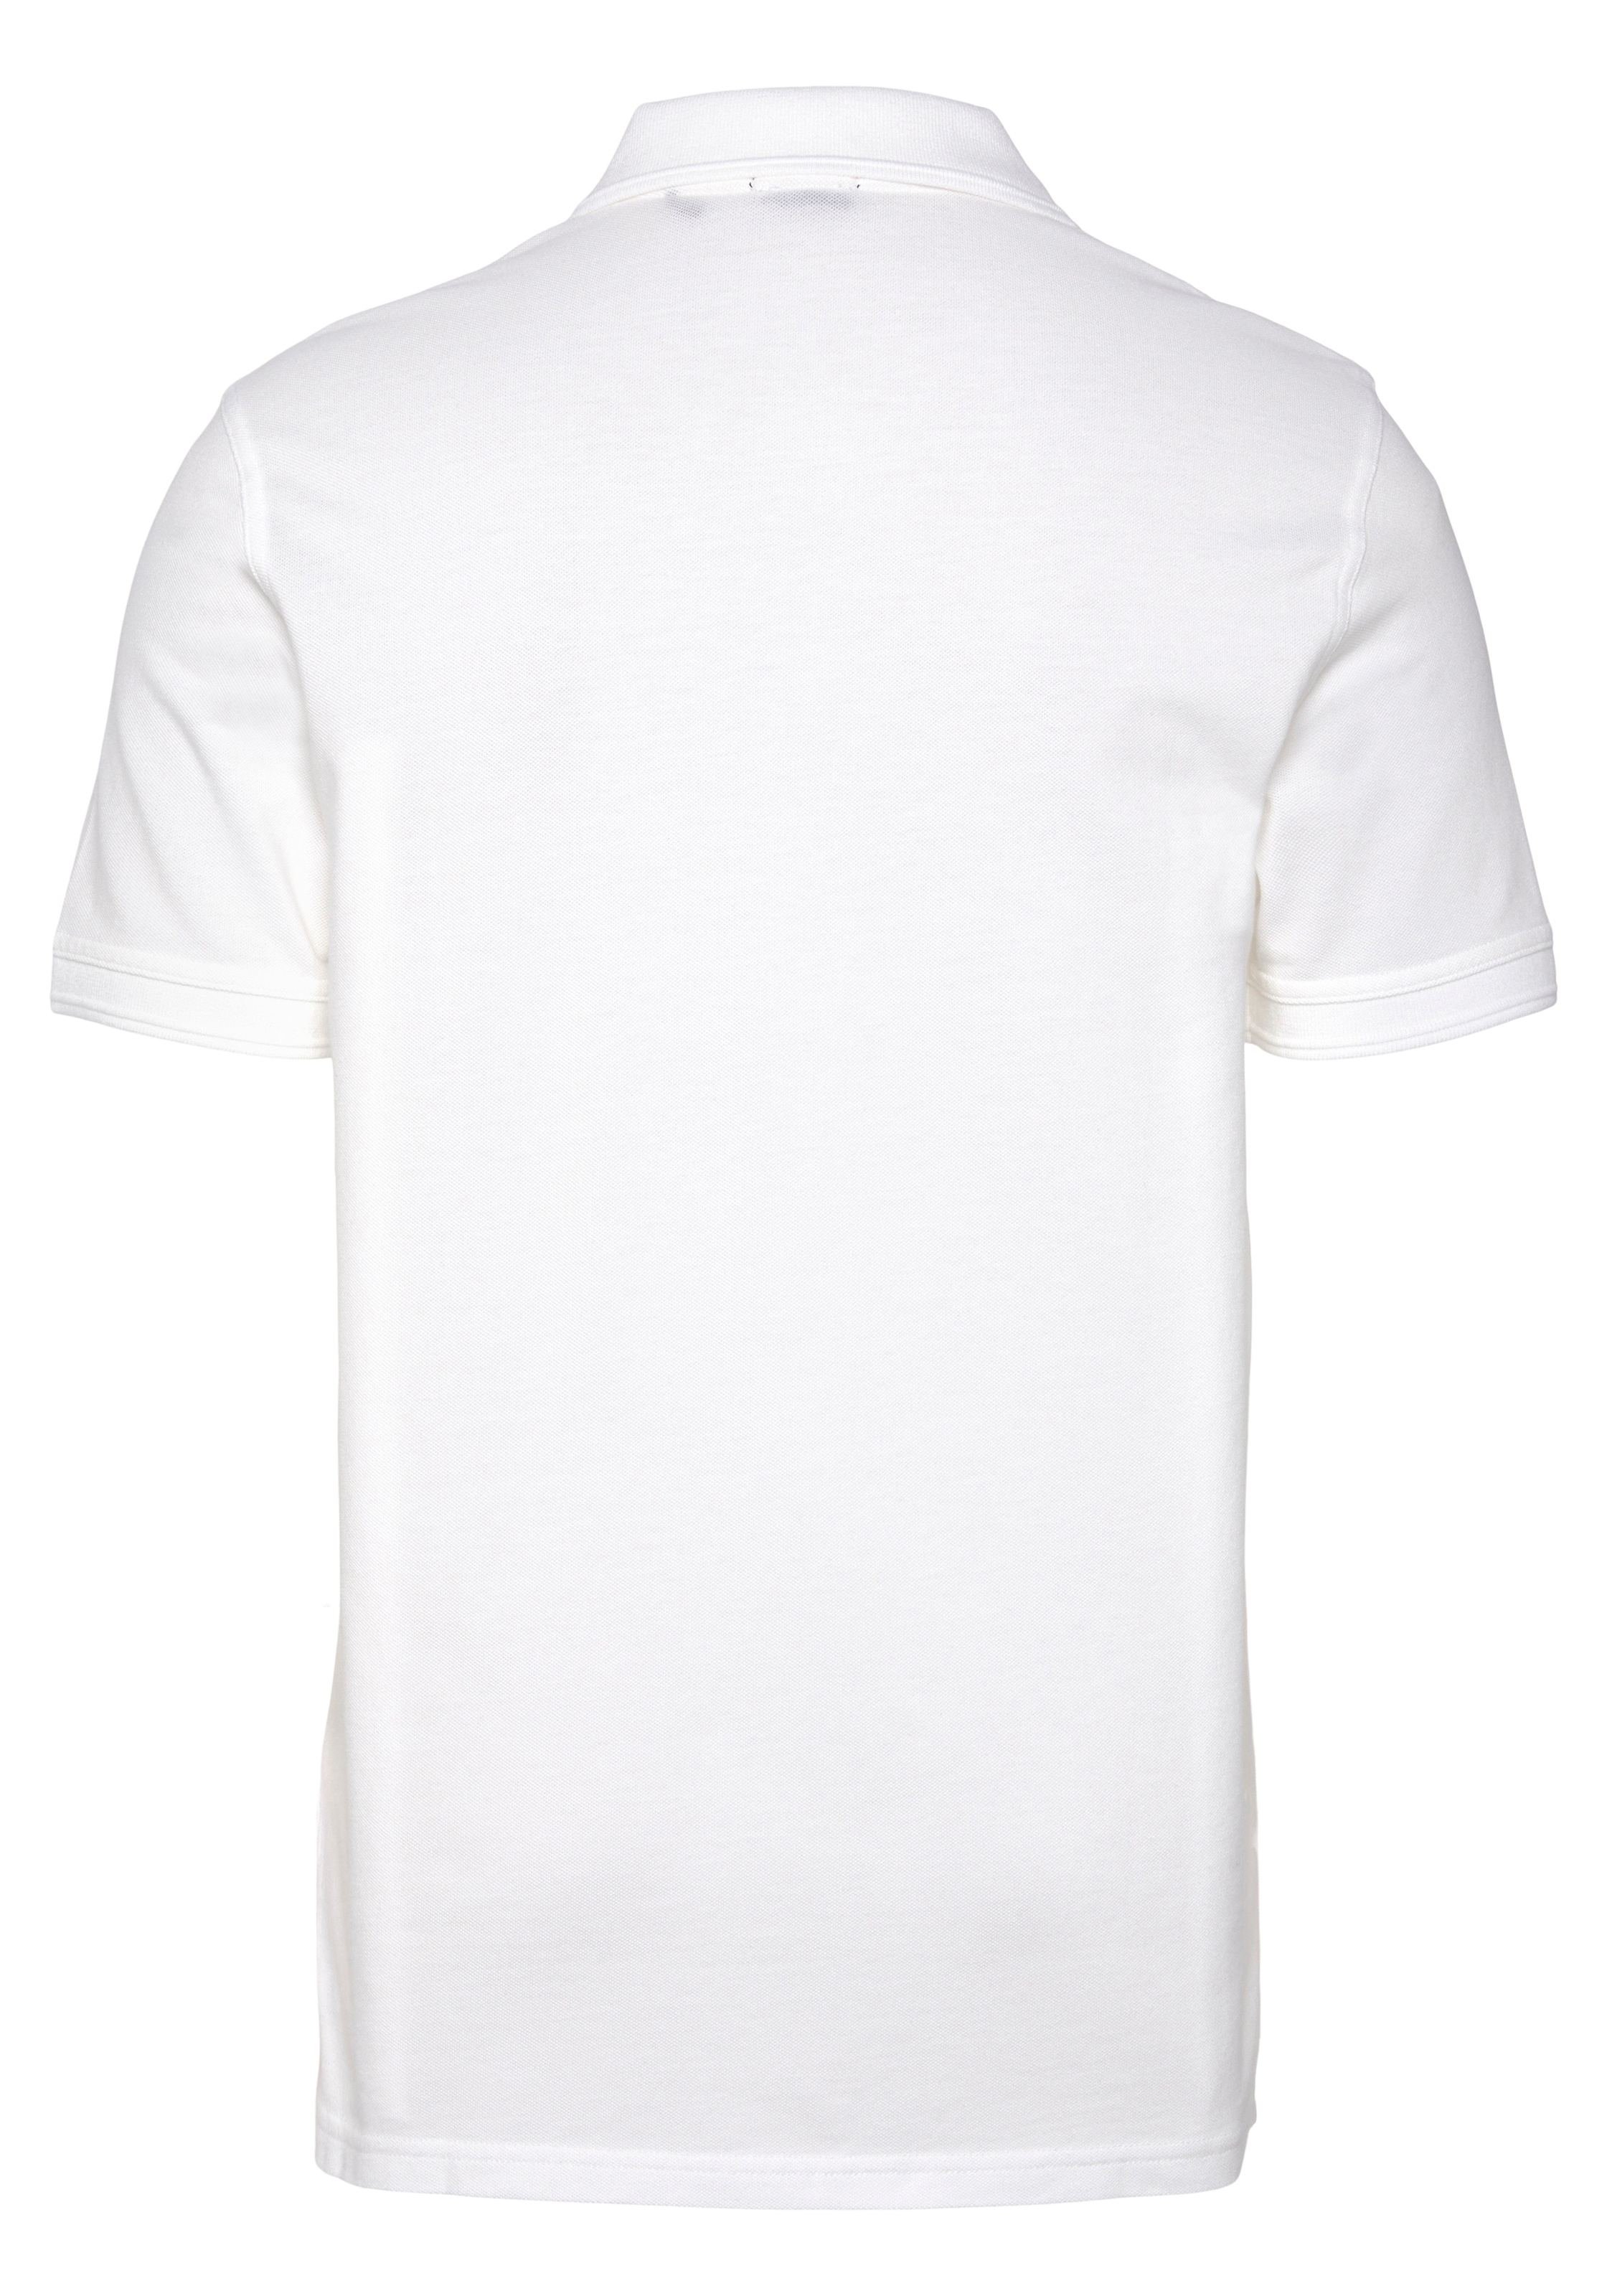 BOSS ORANGE Poloshirt der Brust 01«, dezentem 10203439 auf »Prime online bei Logoschriftzug mit